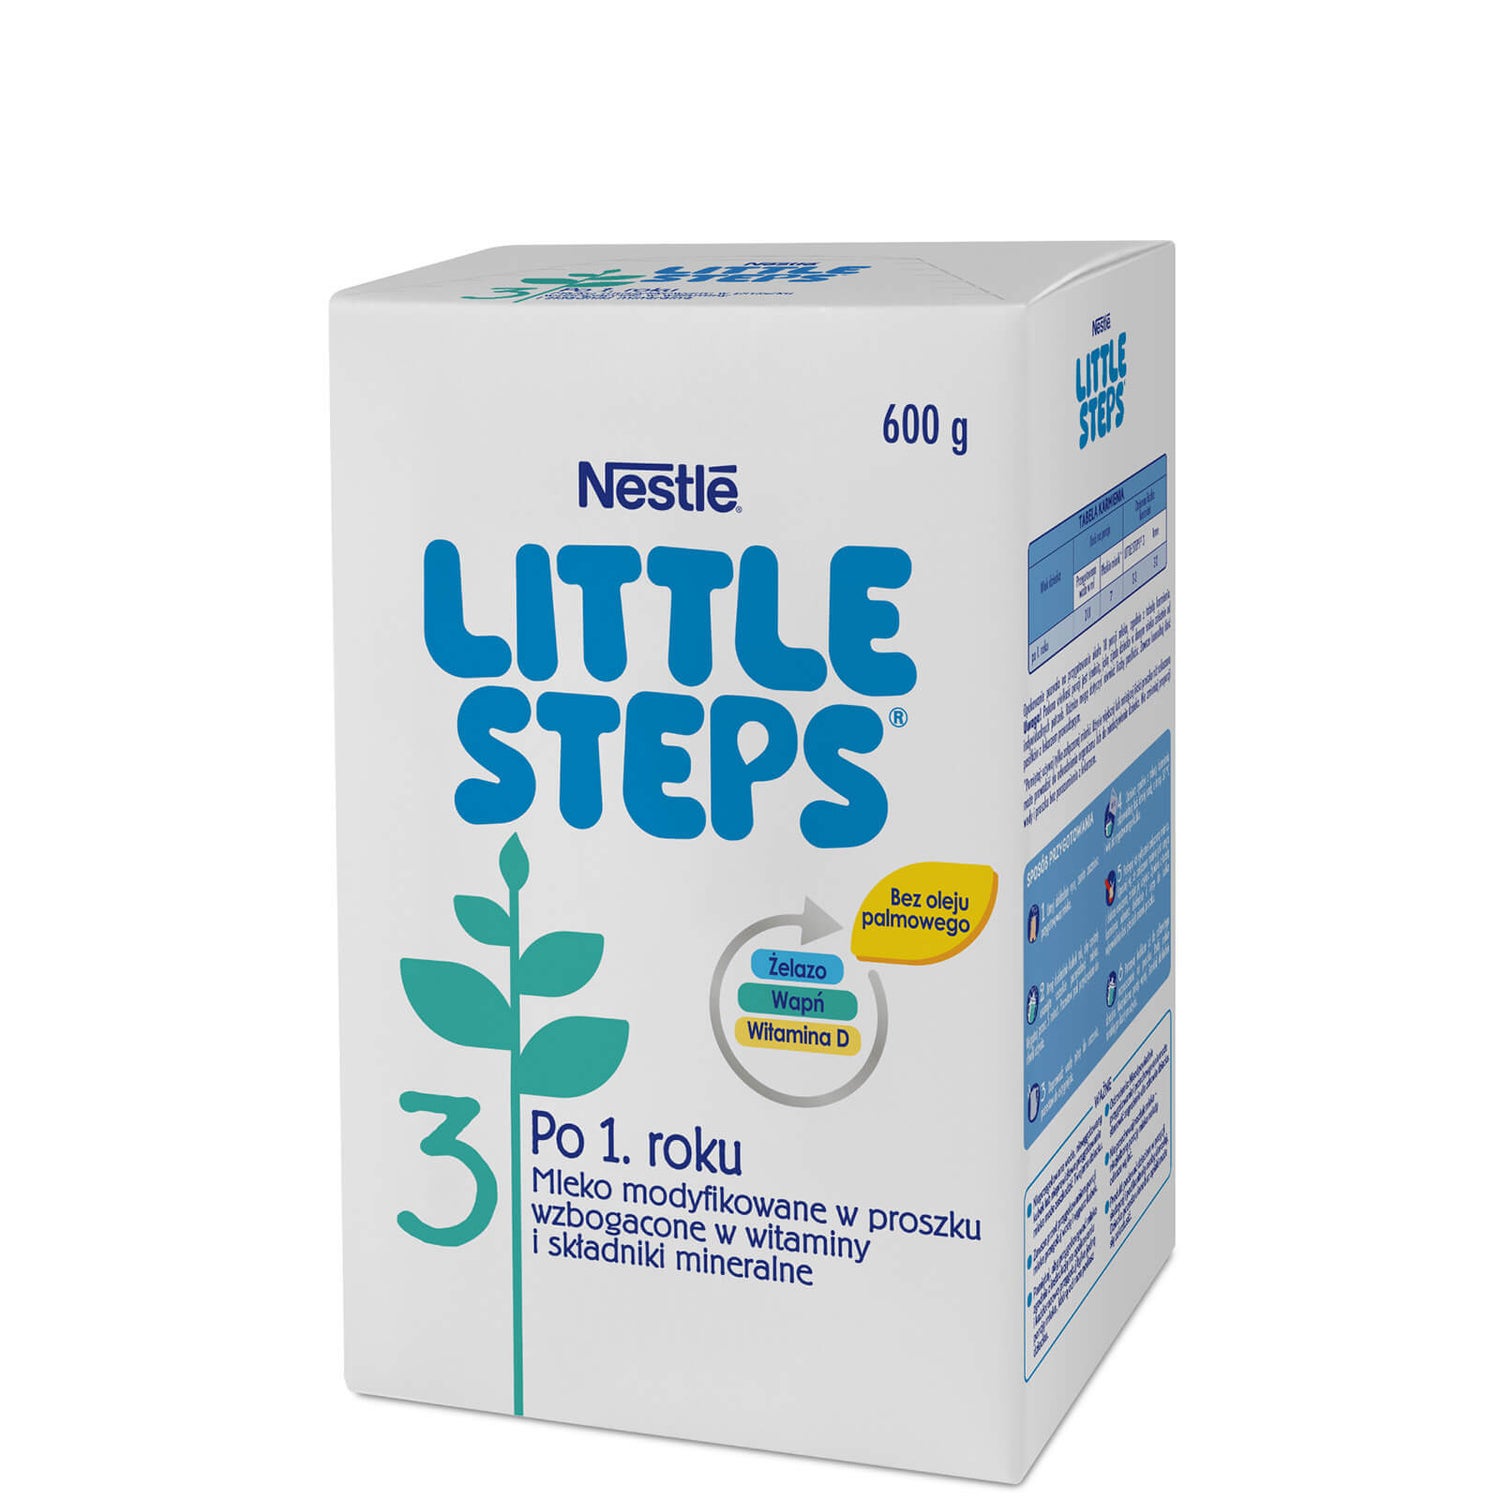 Little Steps® 3 - 600g